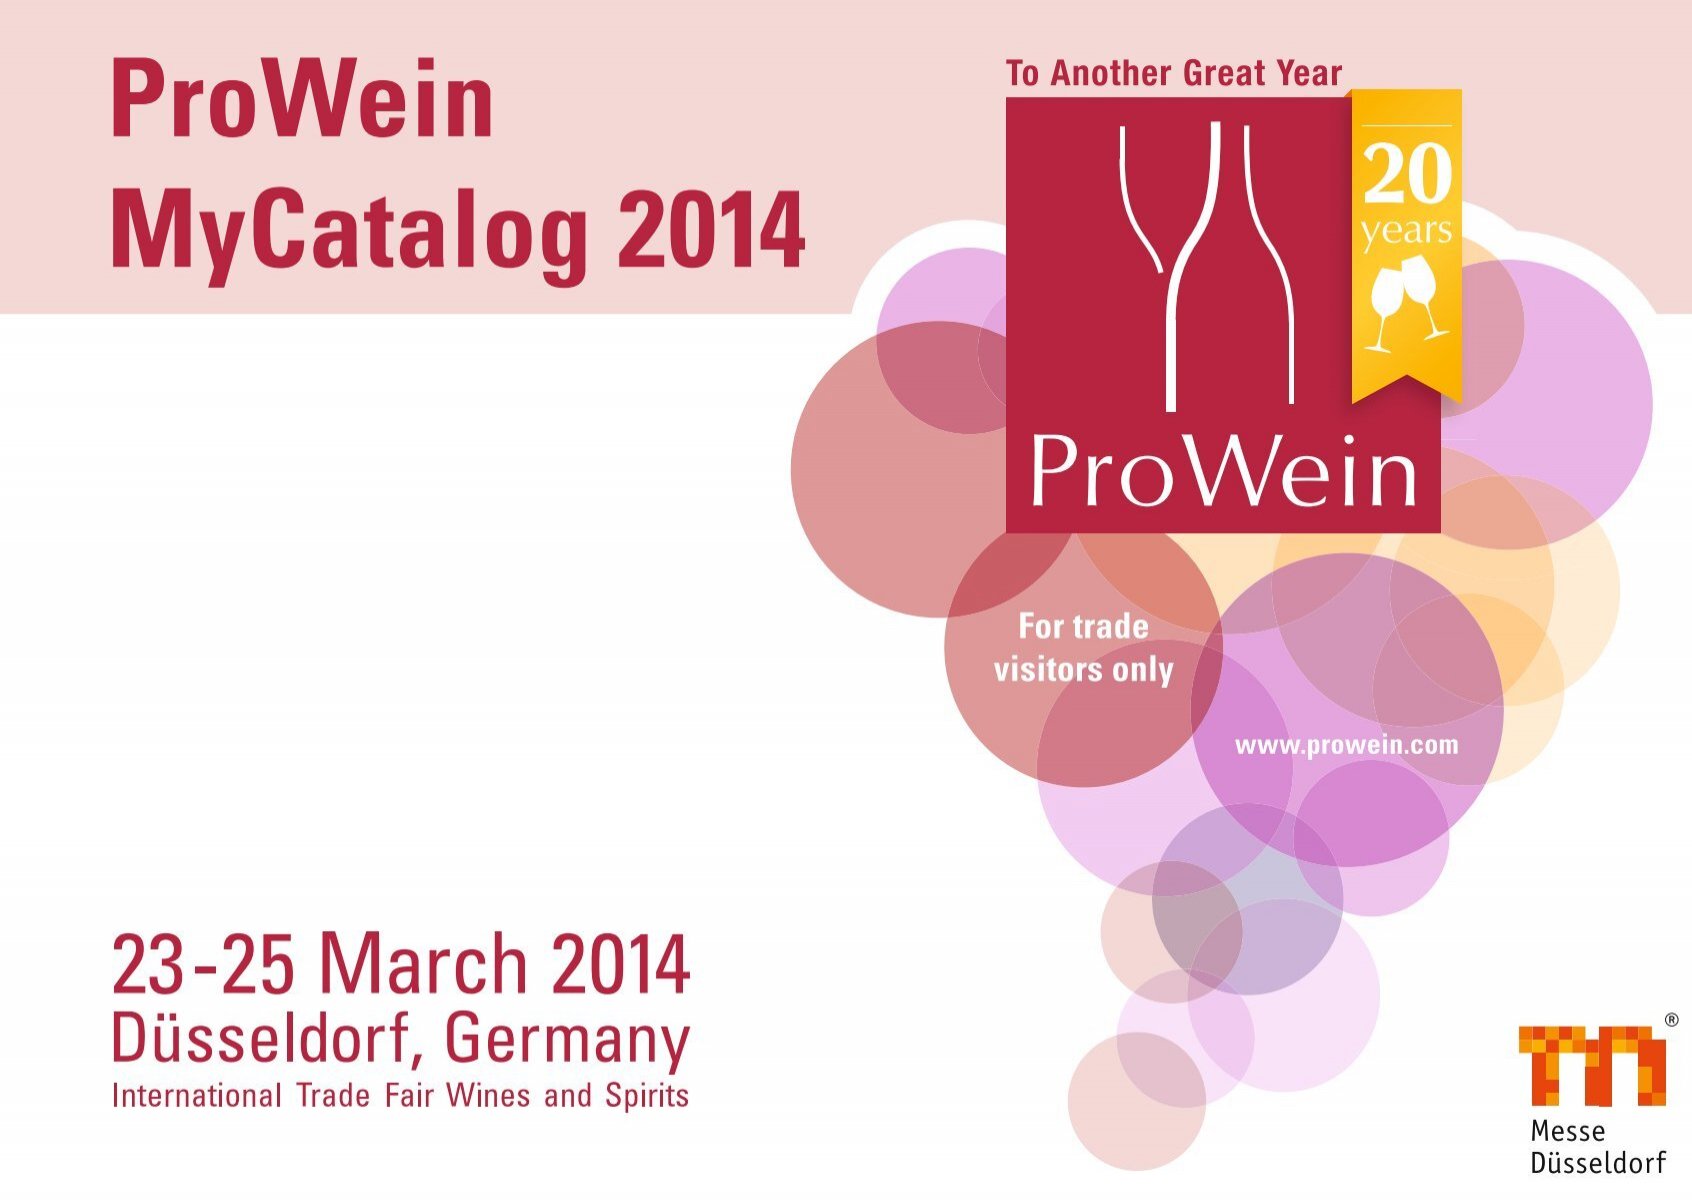 ProWein MyCatalog 2014 - Internationale Fachmesse Weine und